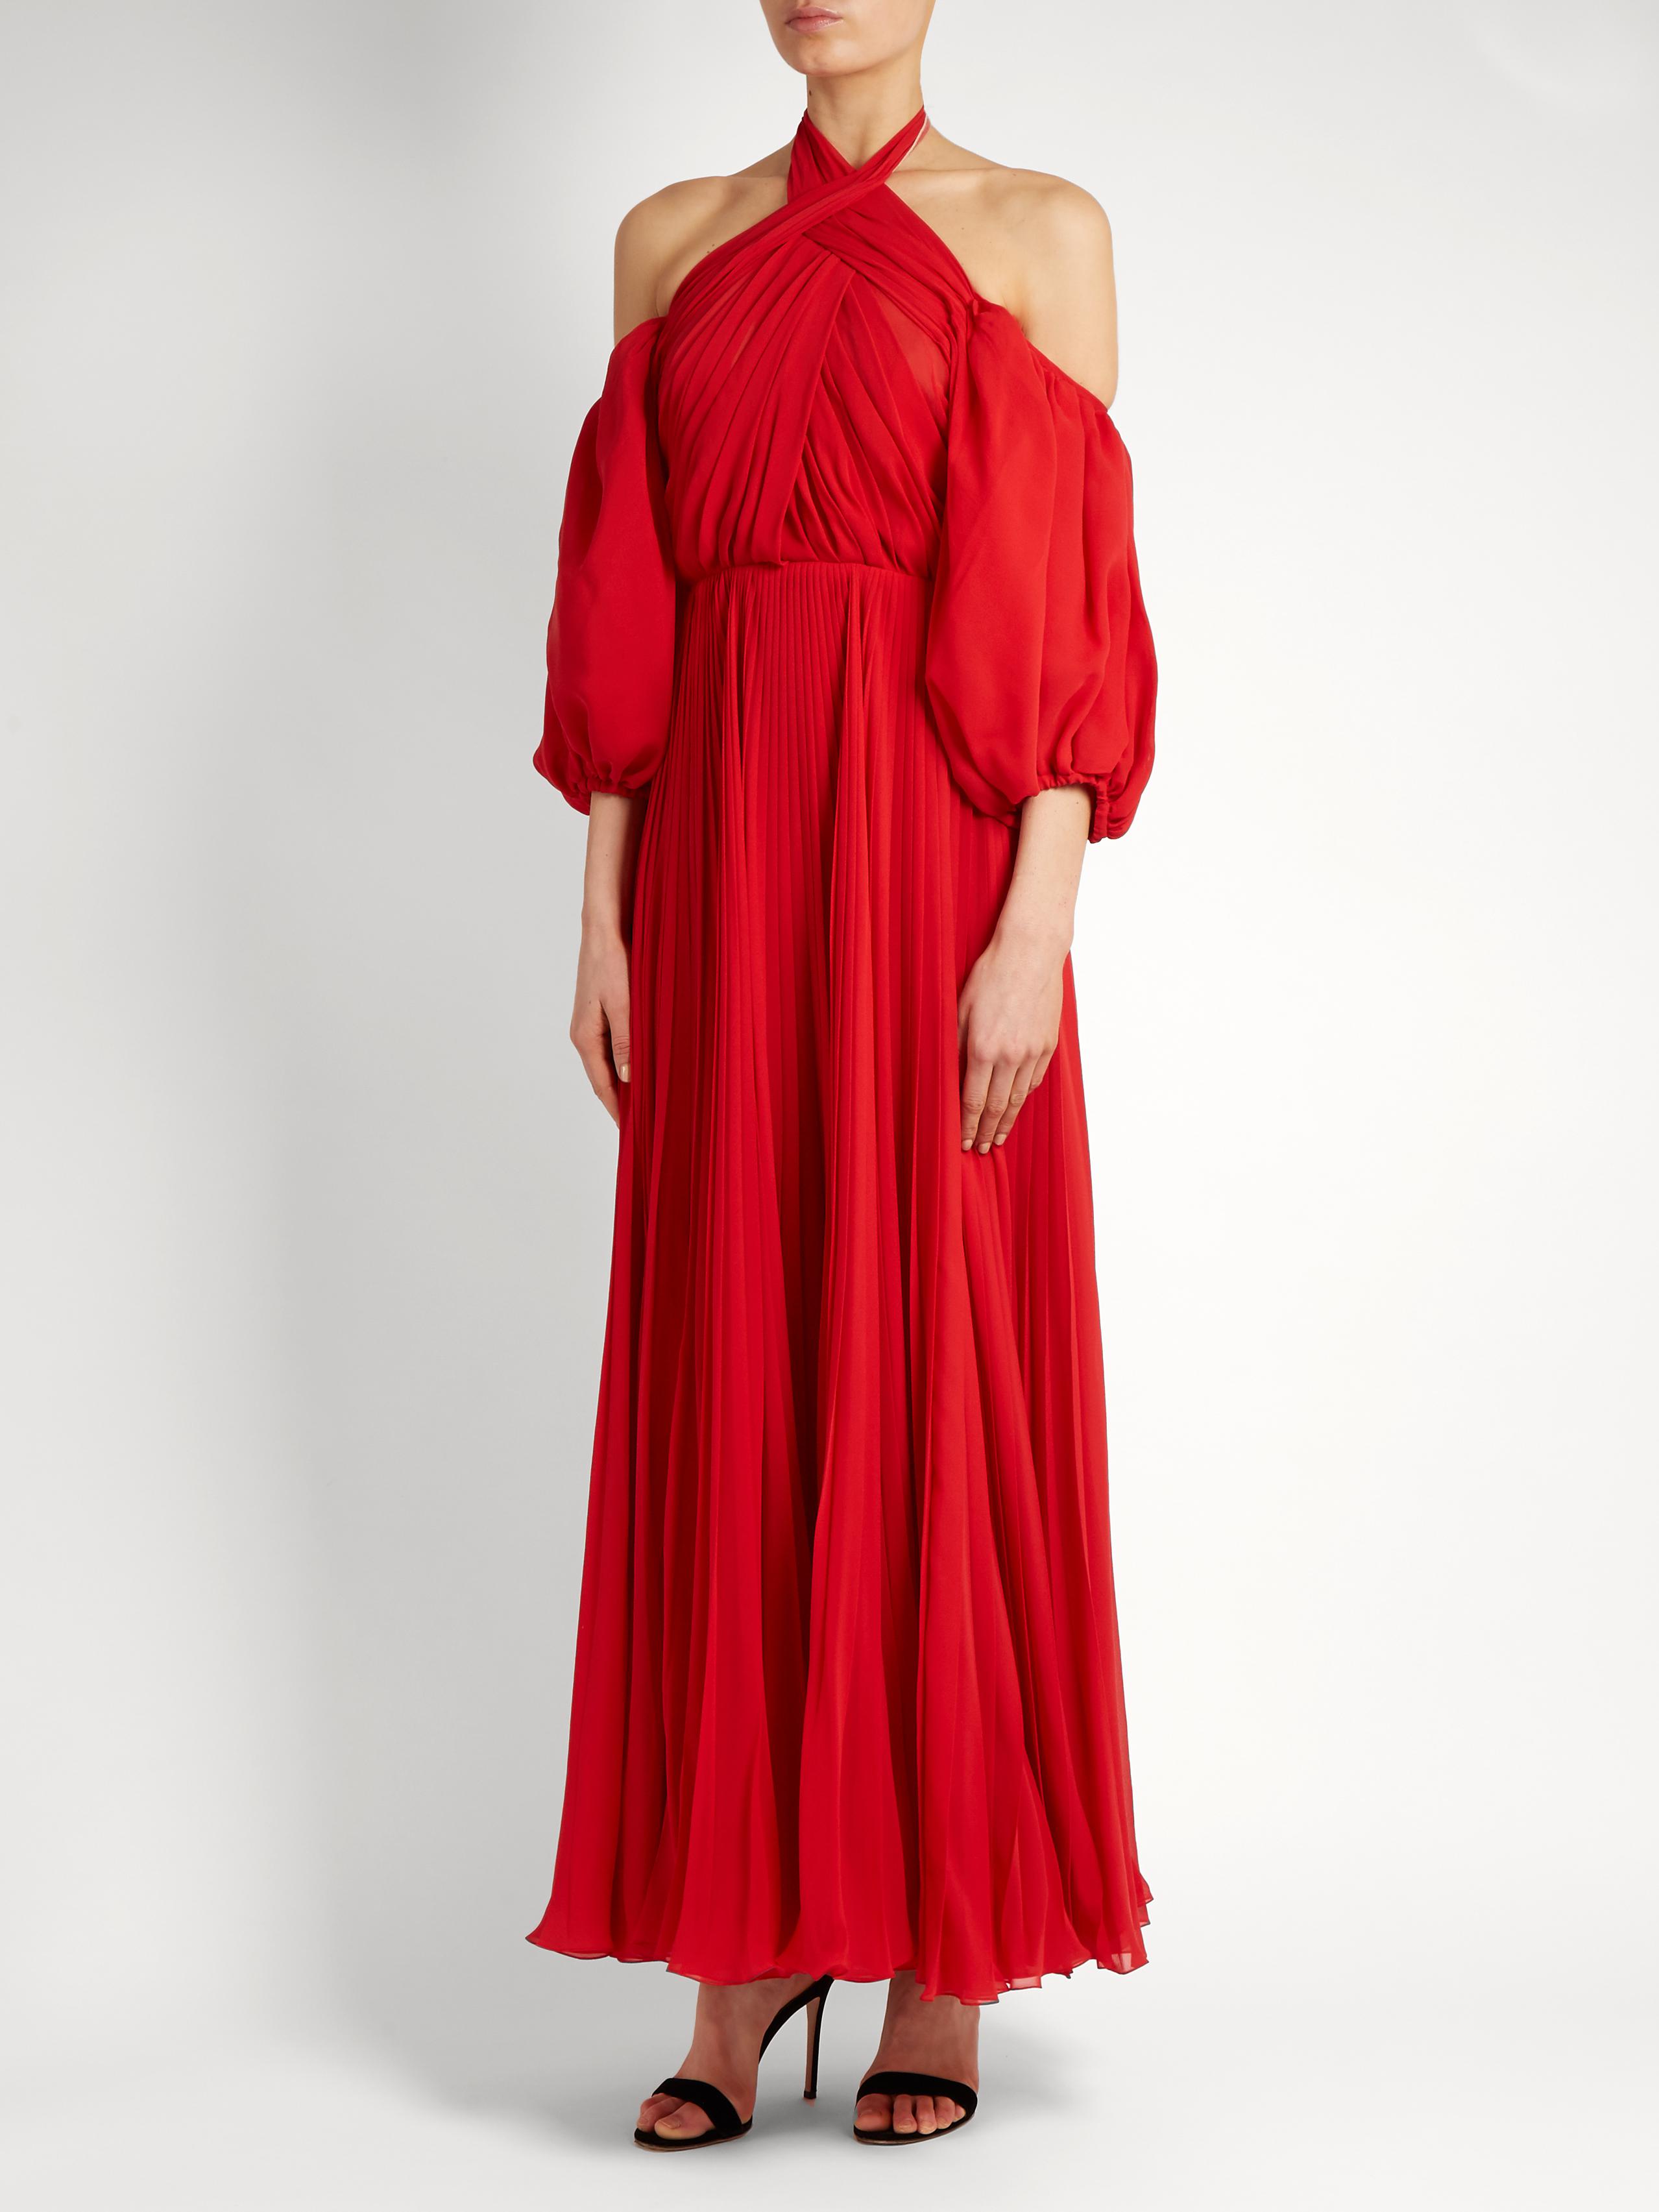 Lyst - Giambattista Valli Cold Shoulder Dress in Red